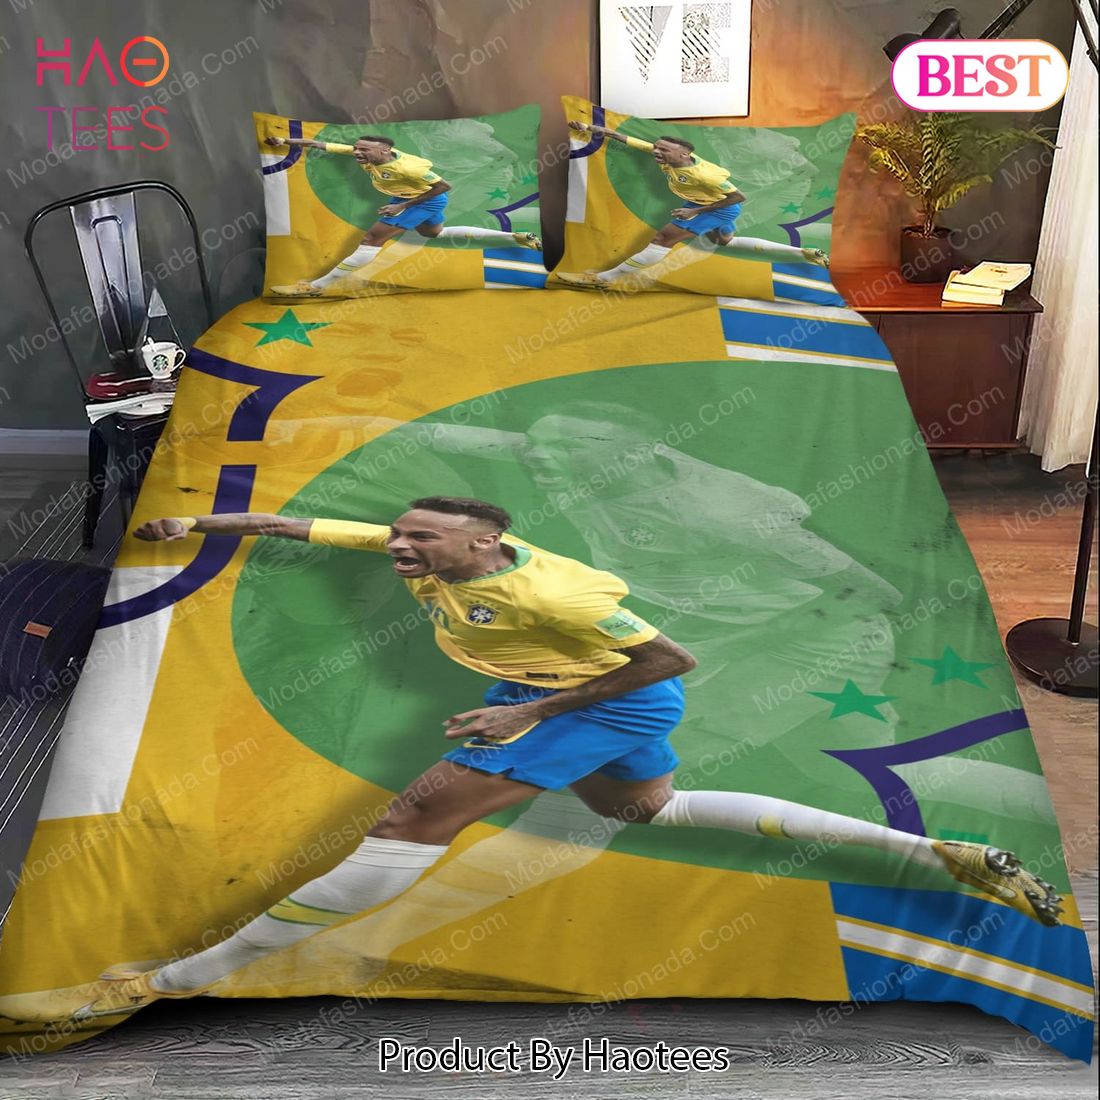 HOT Neymar Brazil Bedding Sets Bed Sets, Bedroom Sets, Comforter Sets, Duvet Cover, Bedspread